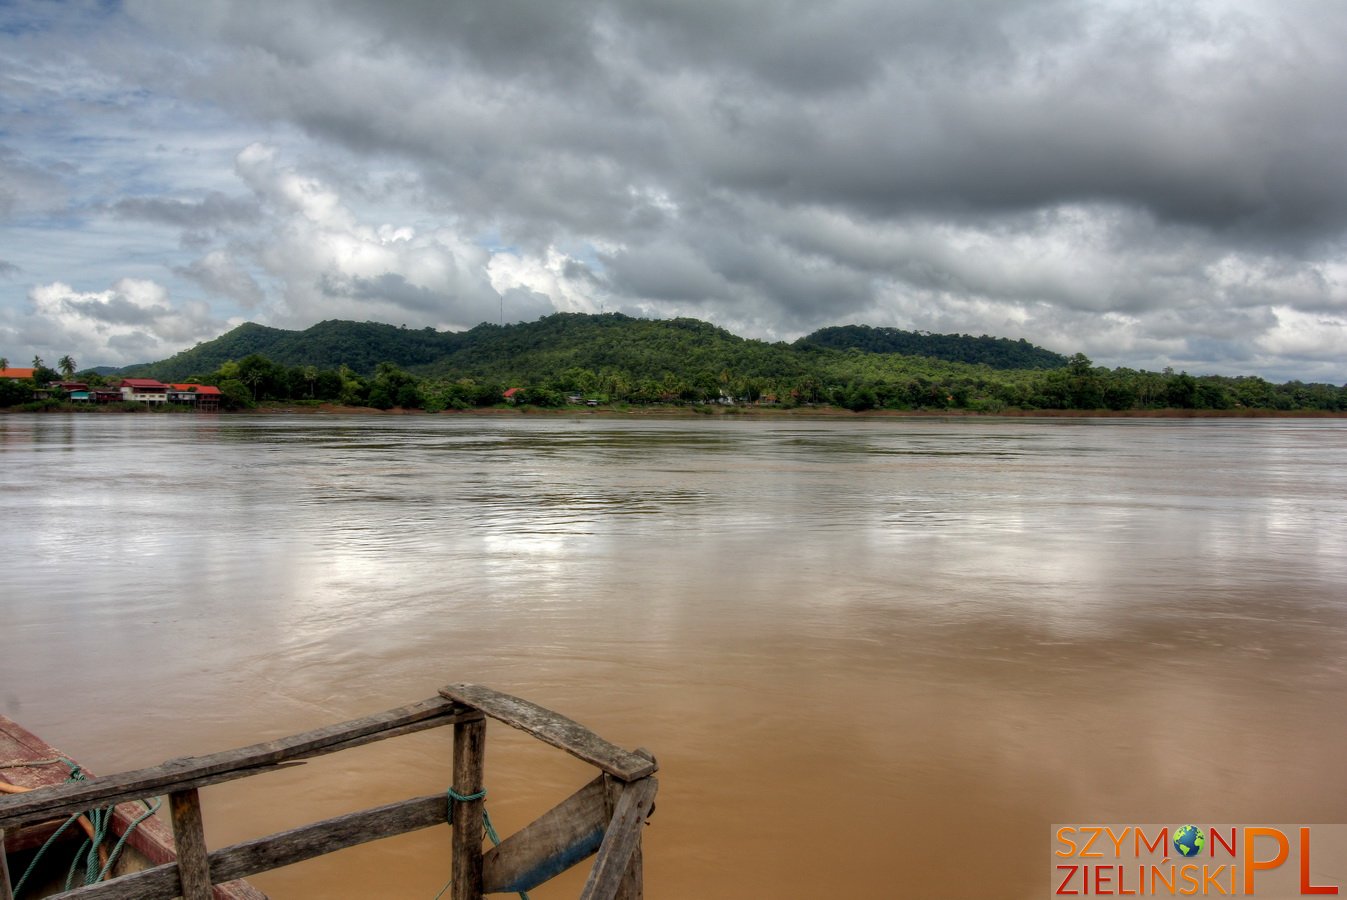 Si Phan Don (Four Thousand Islands), Laos – Don Khong